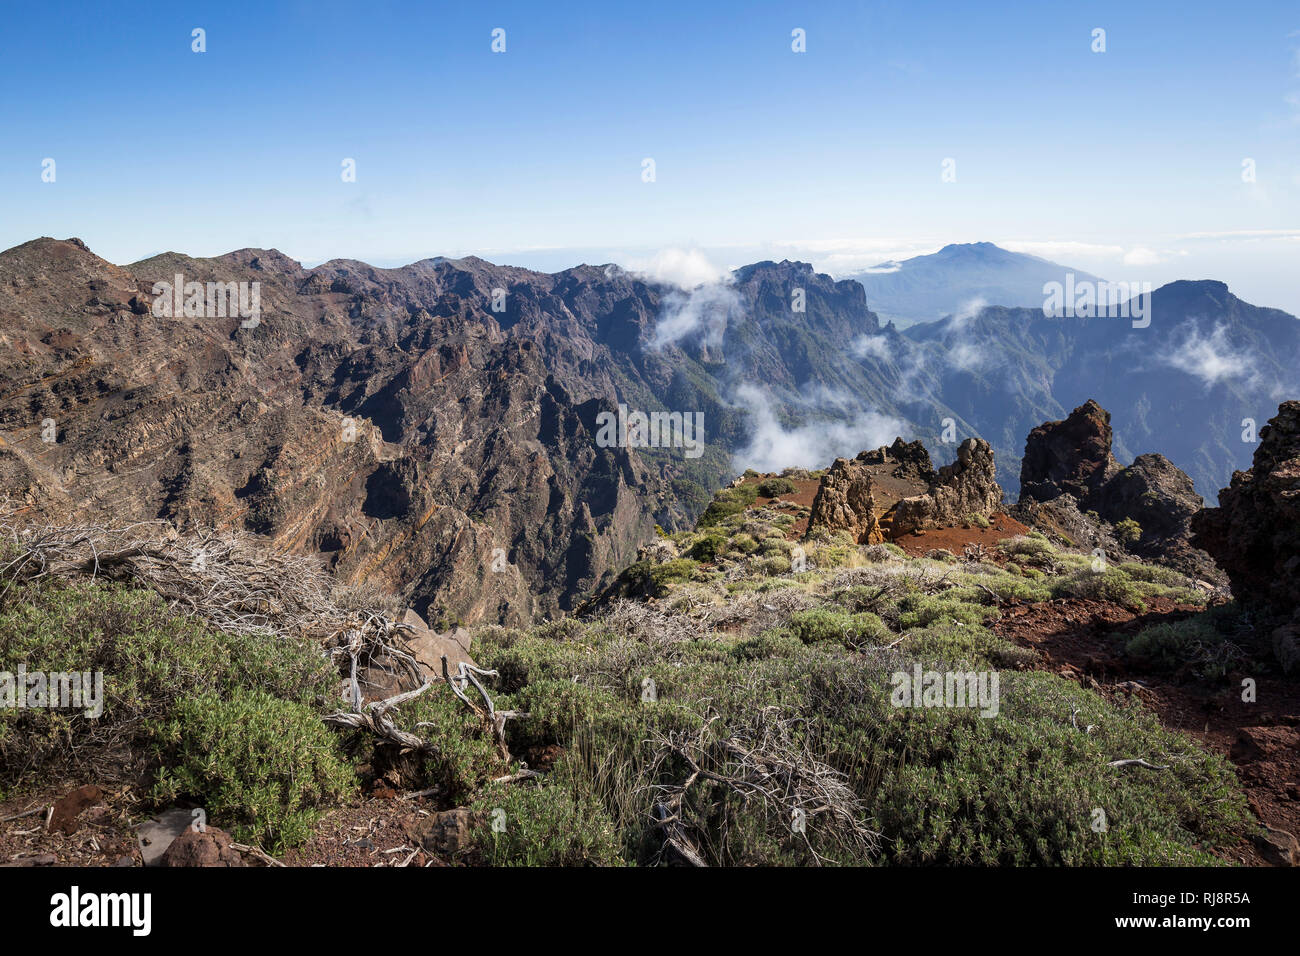 Blick vom Calderarand nach Süden auf die Berge der Caldera de Taburiente und die Cumbre Vieja, Nationalpark, La Palma, Kanarische Inseln, Spanien Stock Photo